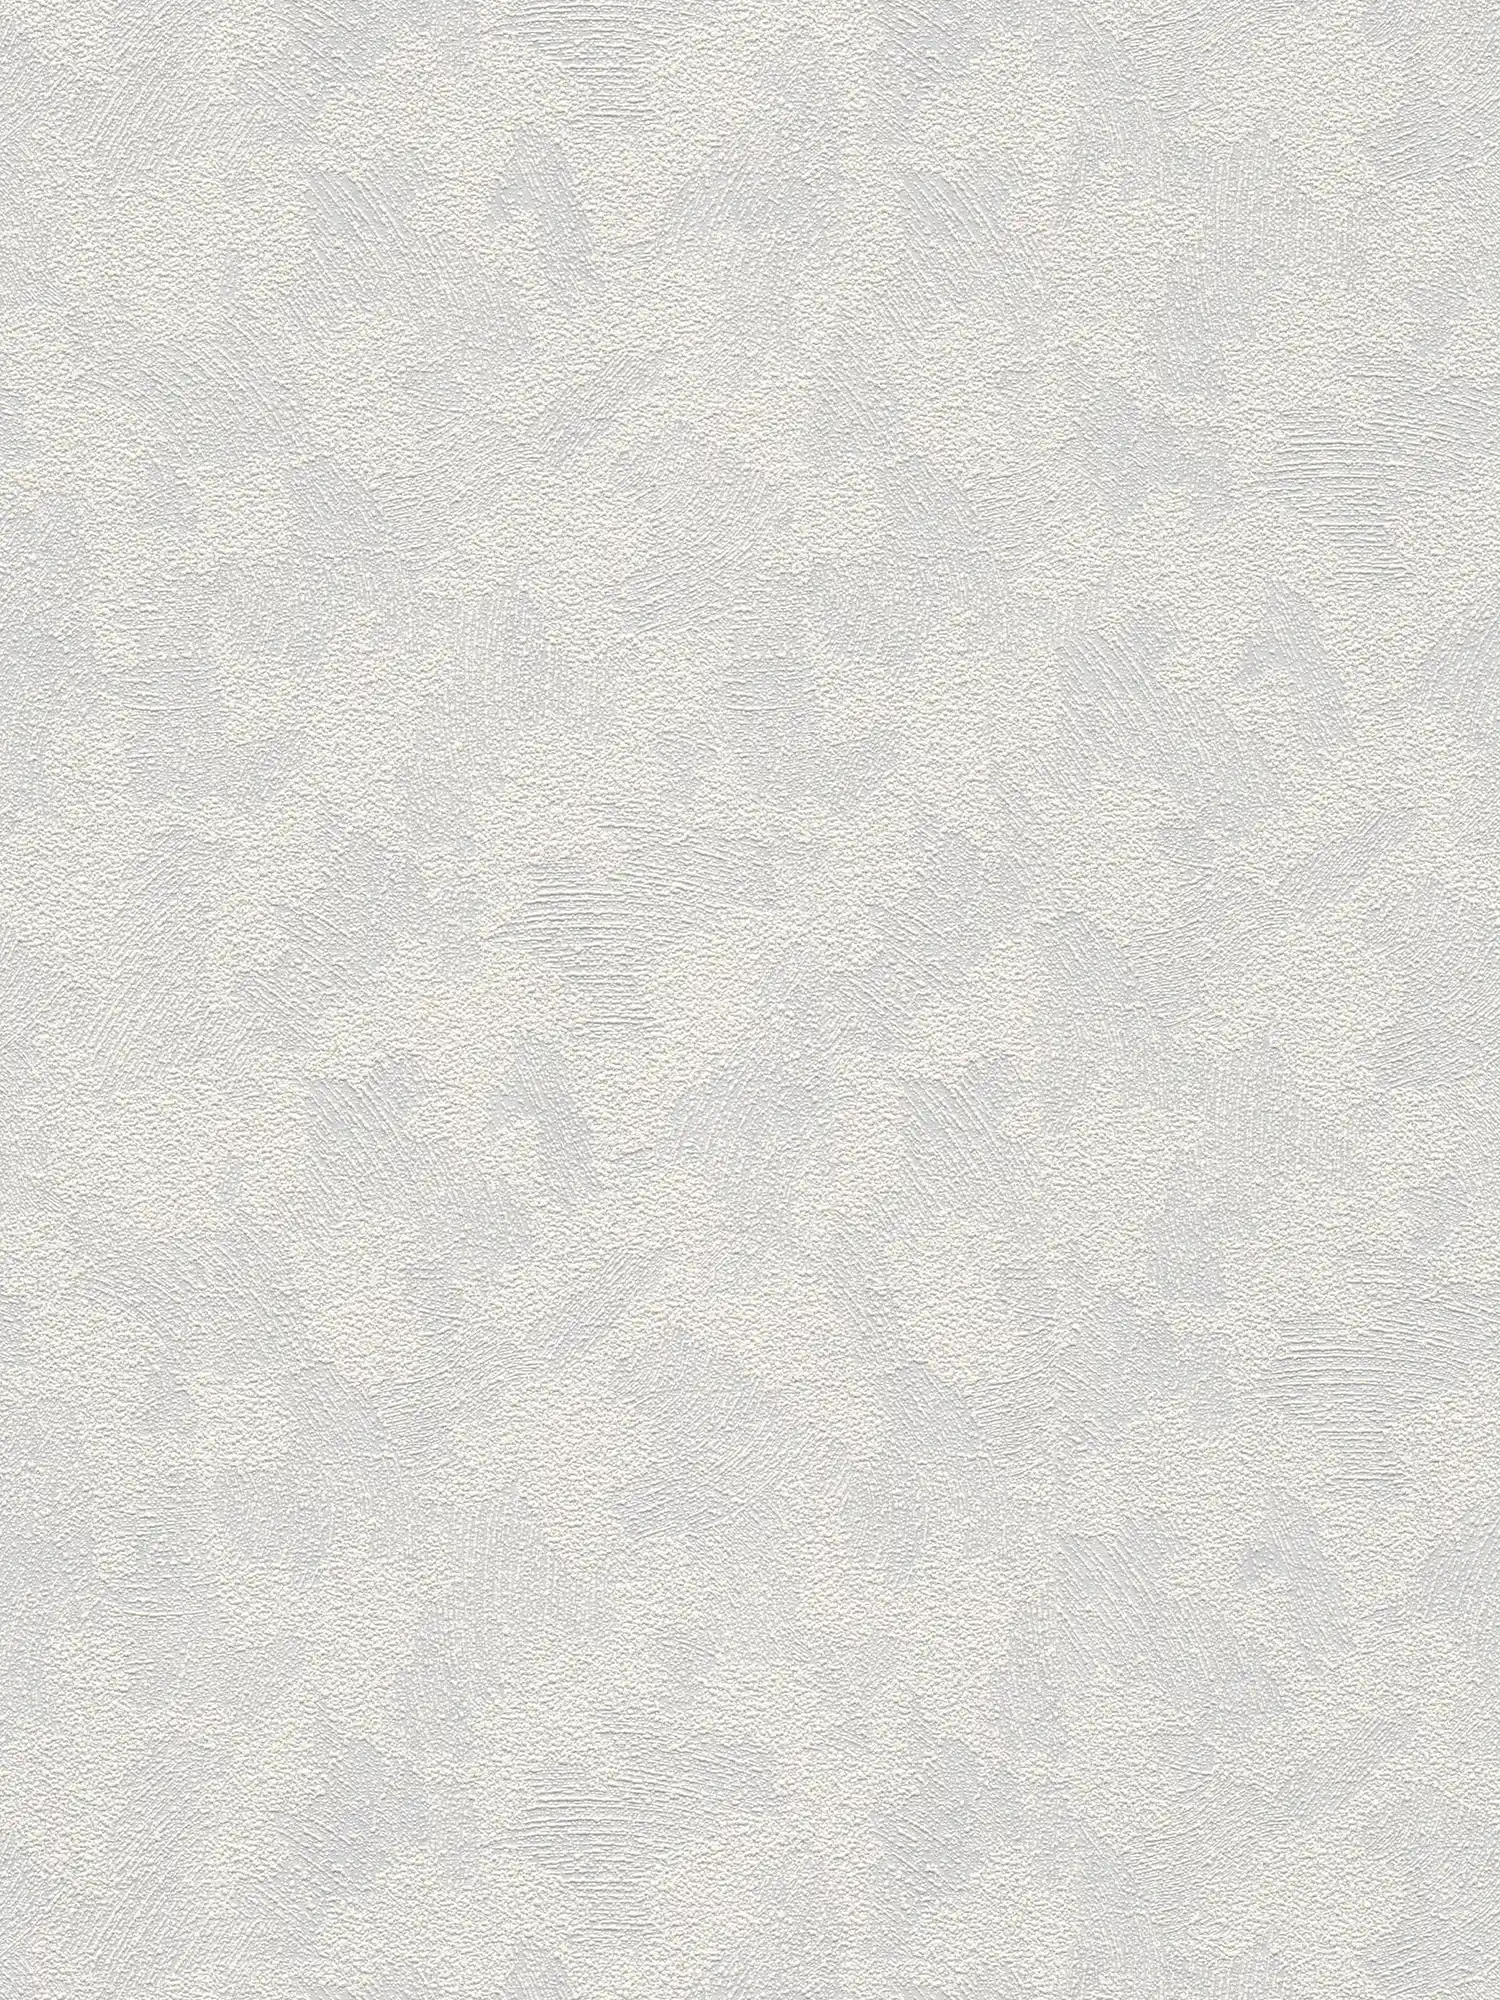 Carta da parati strutturata con aspetto tridimensionale di gesso - verniciabile, bianco
